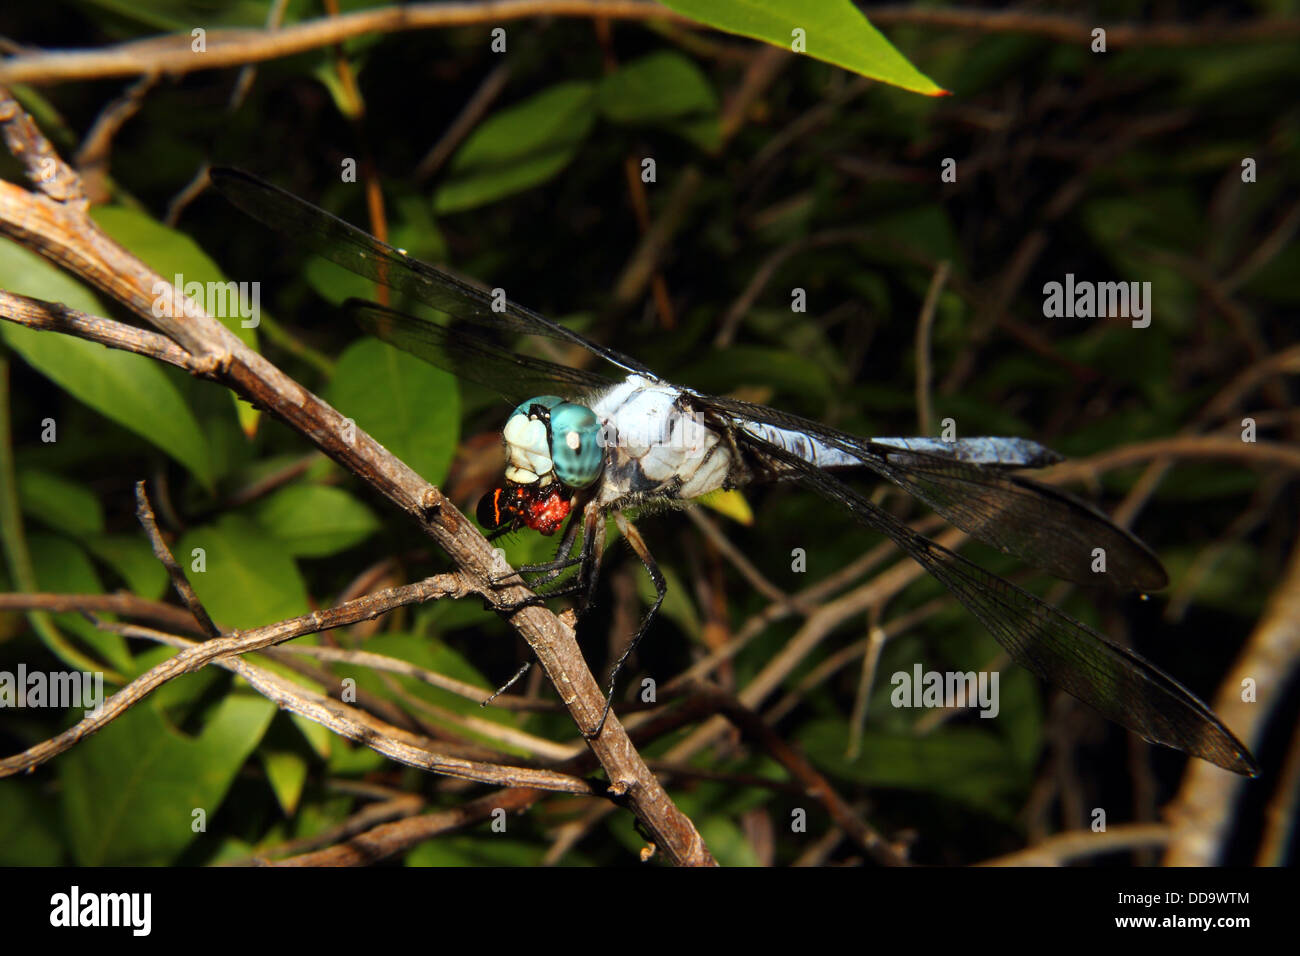 A Blue Dragonfly feeding on a black leaf bug Stock Photo